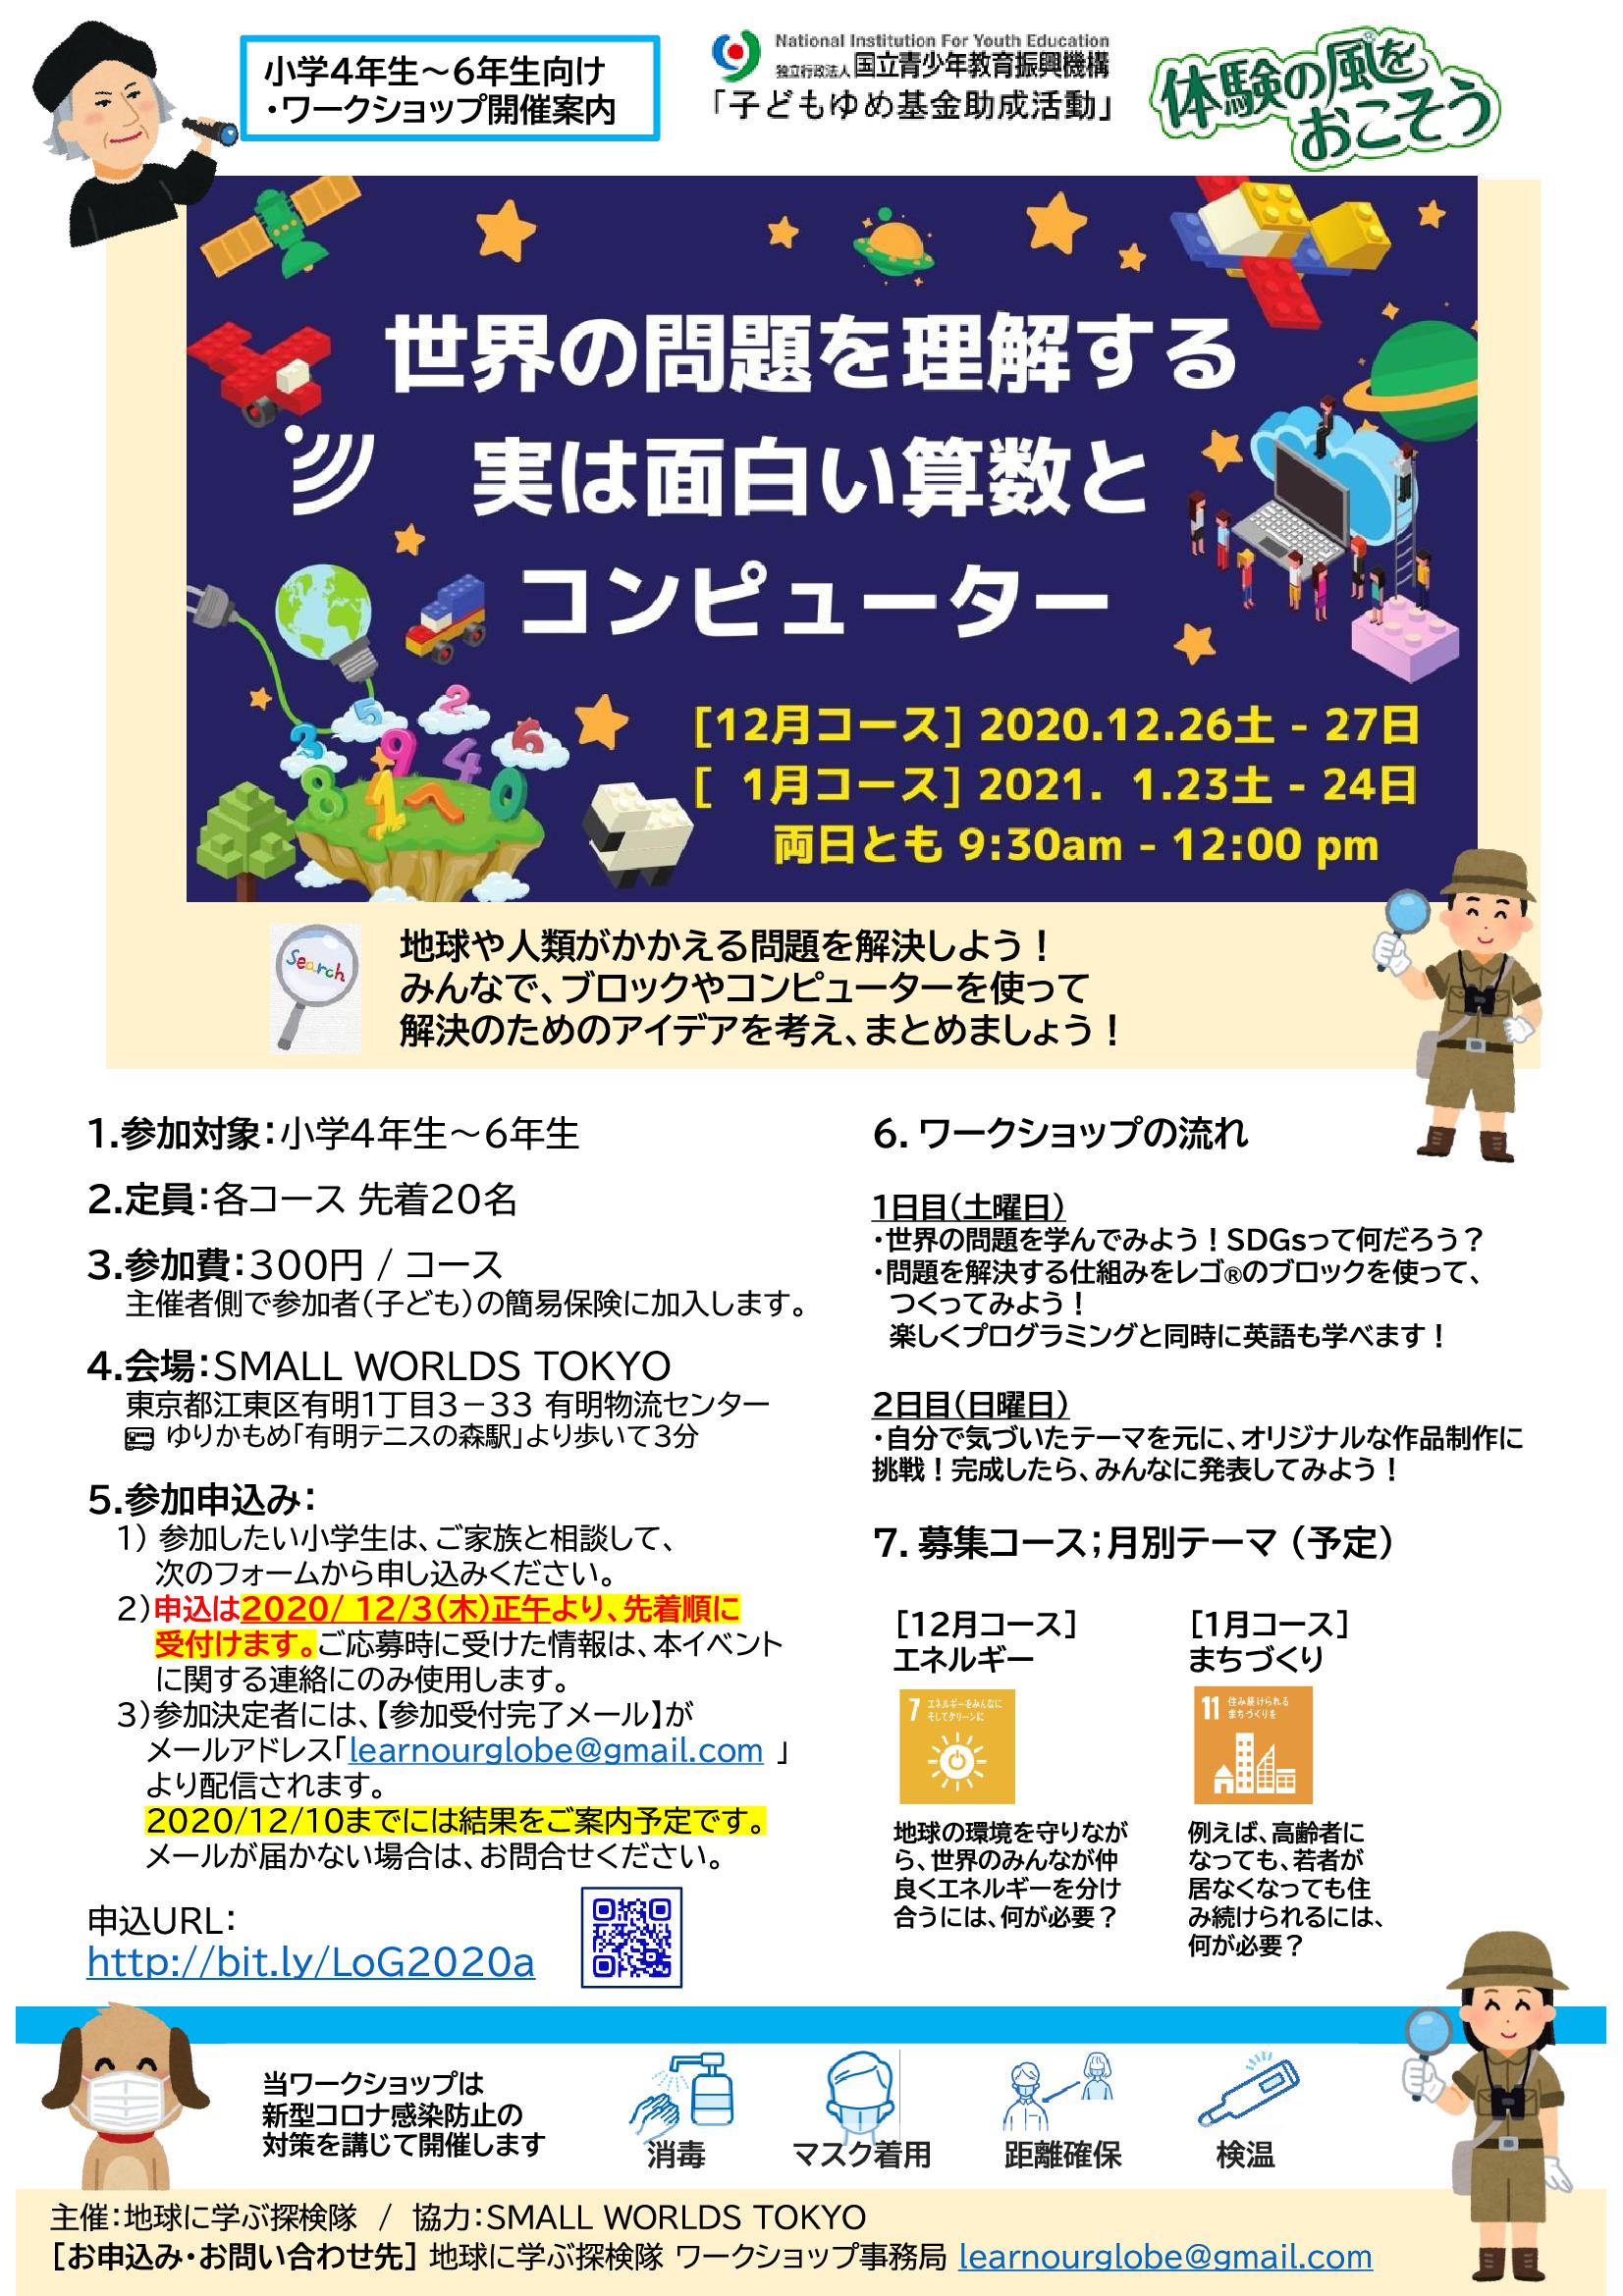 終了 Small Worlds Tokyo ワークショップ 世界の問題を理解する 実はおもしろい算数 とコンピューター イベント情報 江東おでかけ情報局